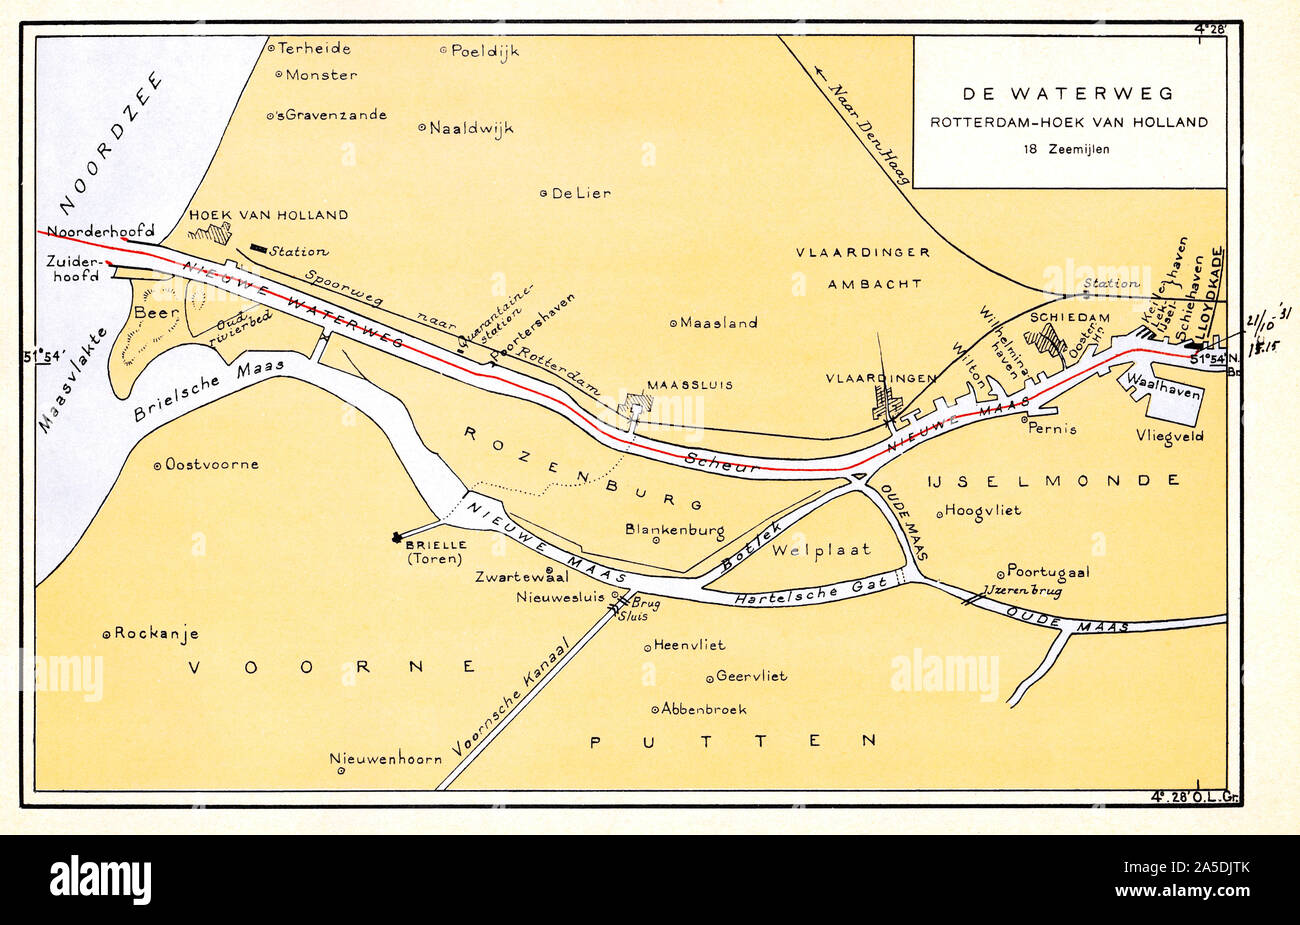 Papenburg, Deutschland - 2019.10.20: 1931 Historische Karte der Hafen von Rotterdam/lloydkade Zugriff von rotterdamsche Lloyd Pkw route Atlas 1931, g j j Stockfoto